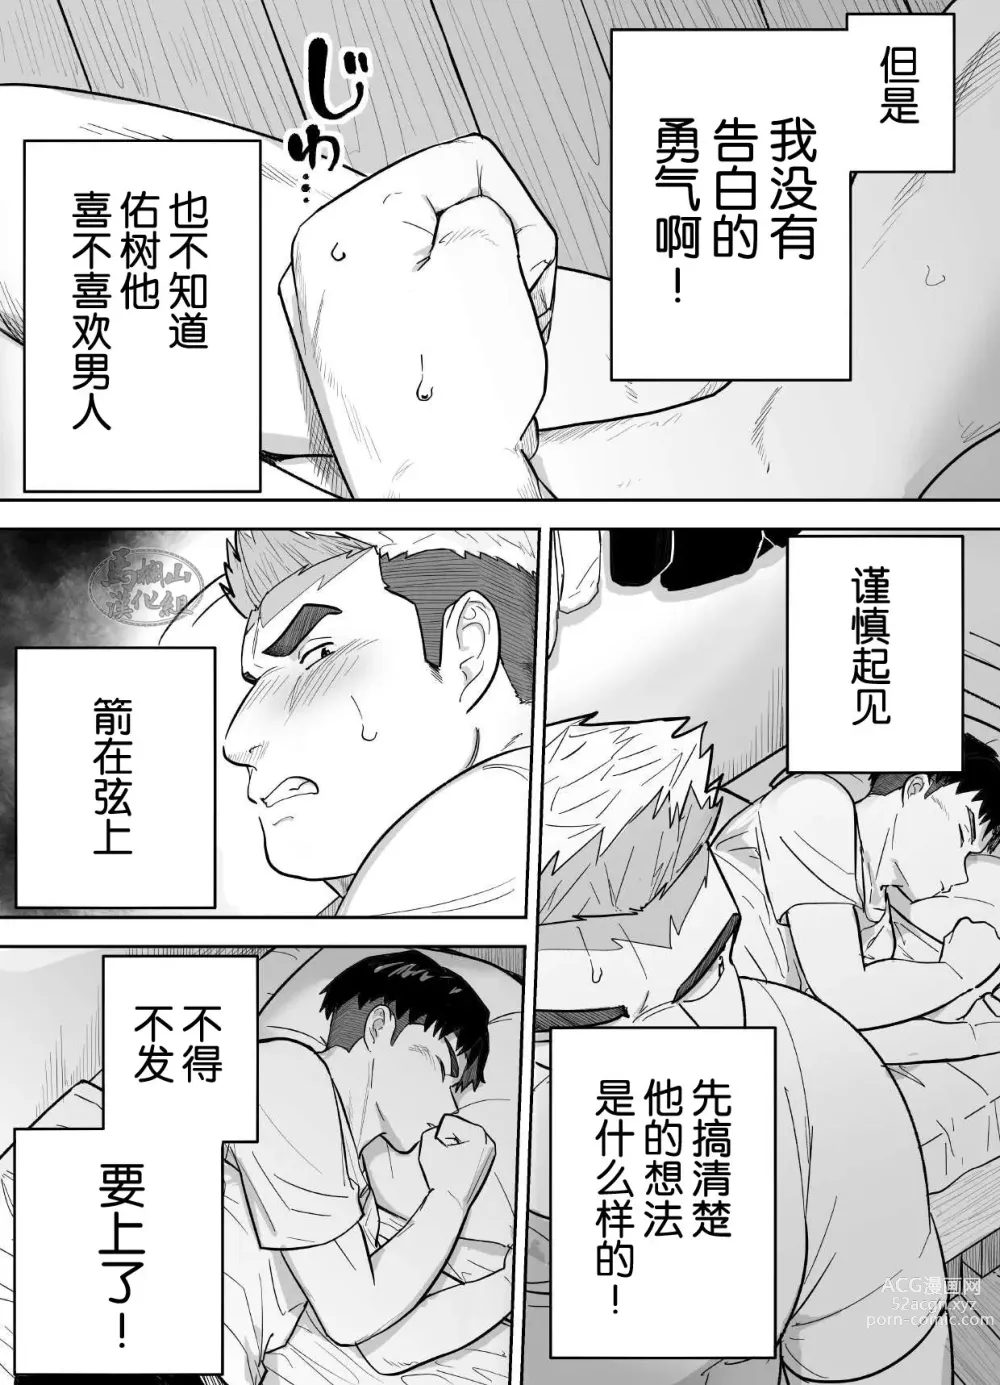 Page 7 of manga 片思いしてるガチムチ同級生に襲われる話